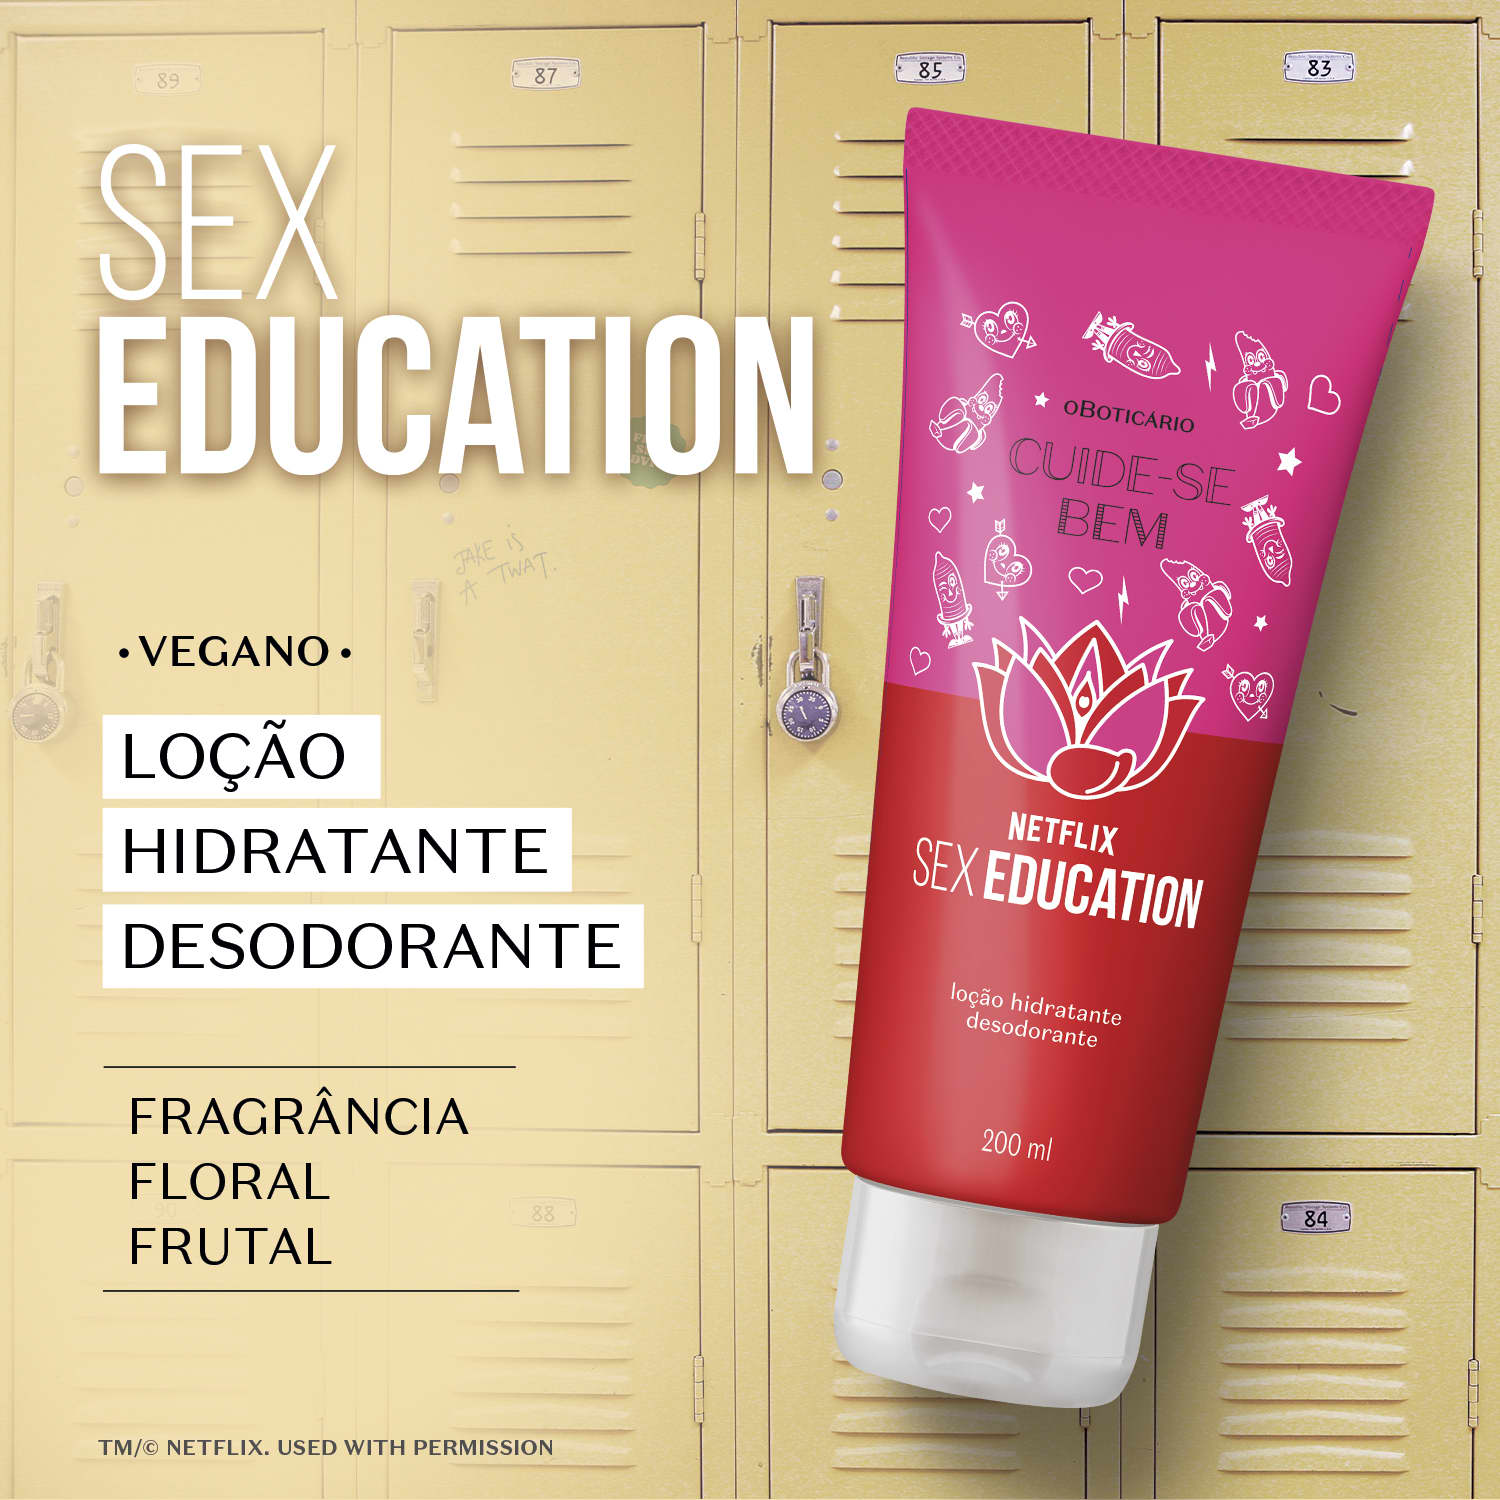 Loção Hidratante Desodorante Cuide Se Bem Netflix Sex Education 200ml O Boticário 0235